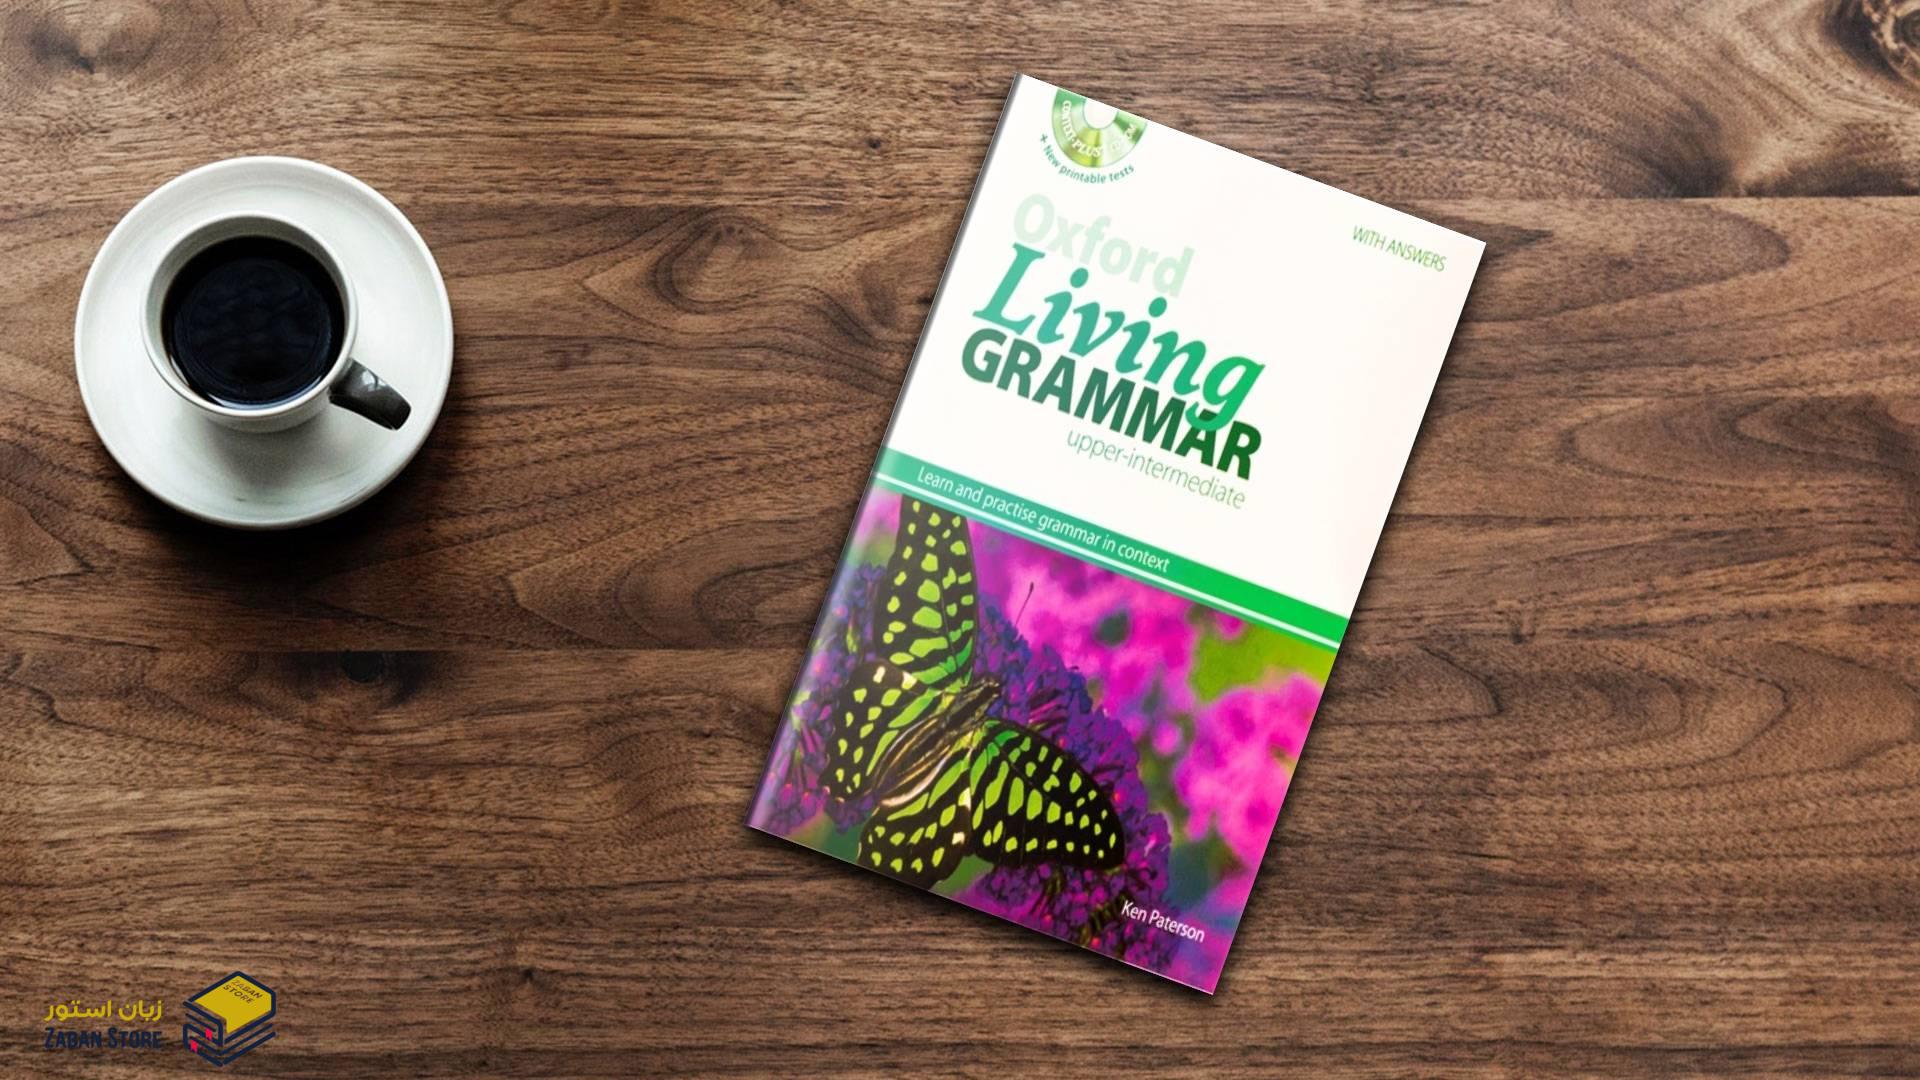 خرید کتاب زبان | کتاب زبان اصلی | Oxford Living Grammar Upper Intermediate | آکسفورد لیوینگ گرامر آپر اینترمدیت